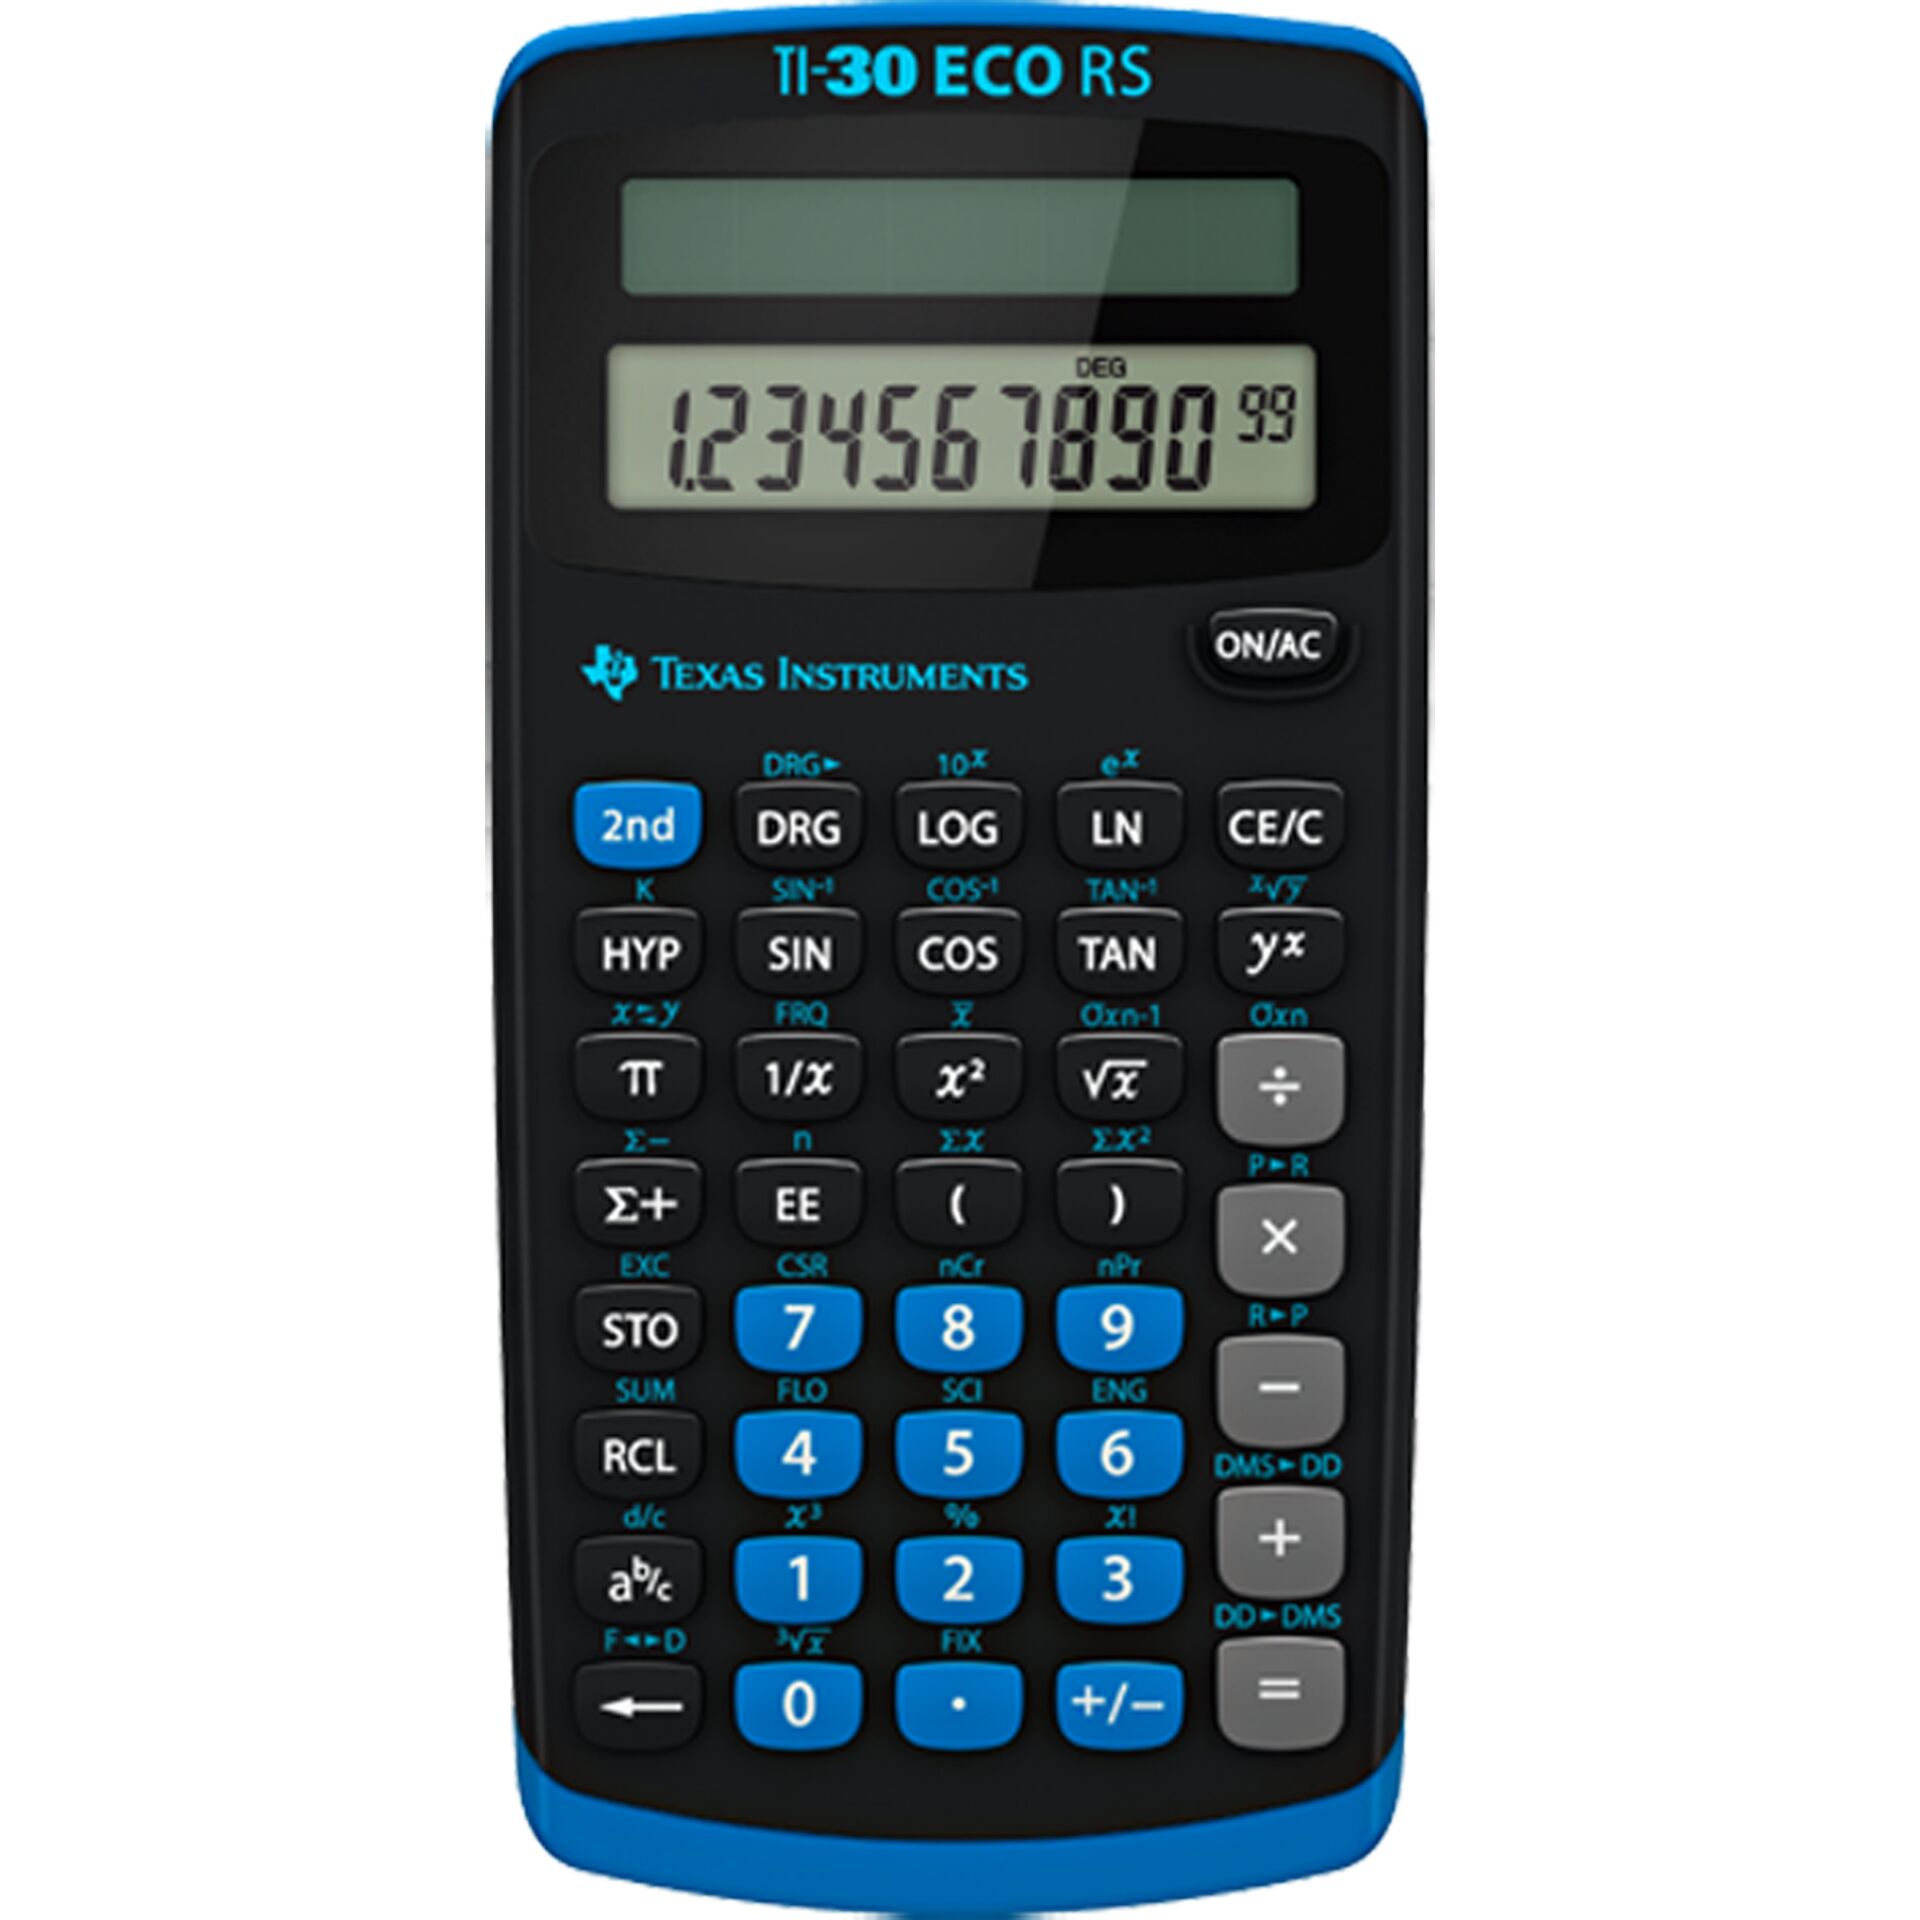 Texas Instruments TI-30 eco RS, wissenschaftlicher Taschenrechner